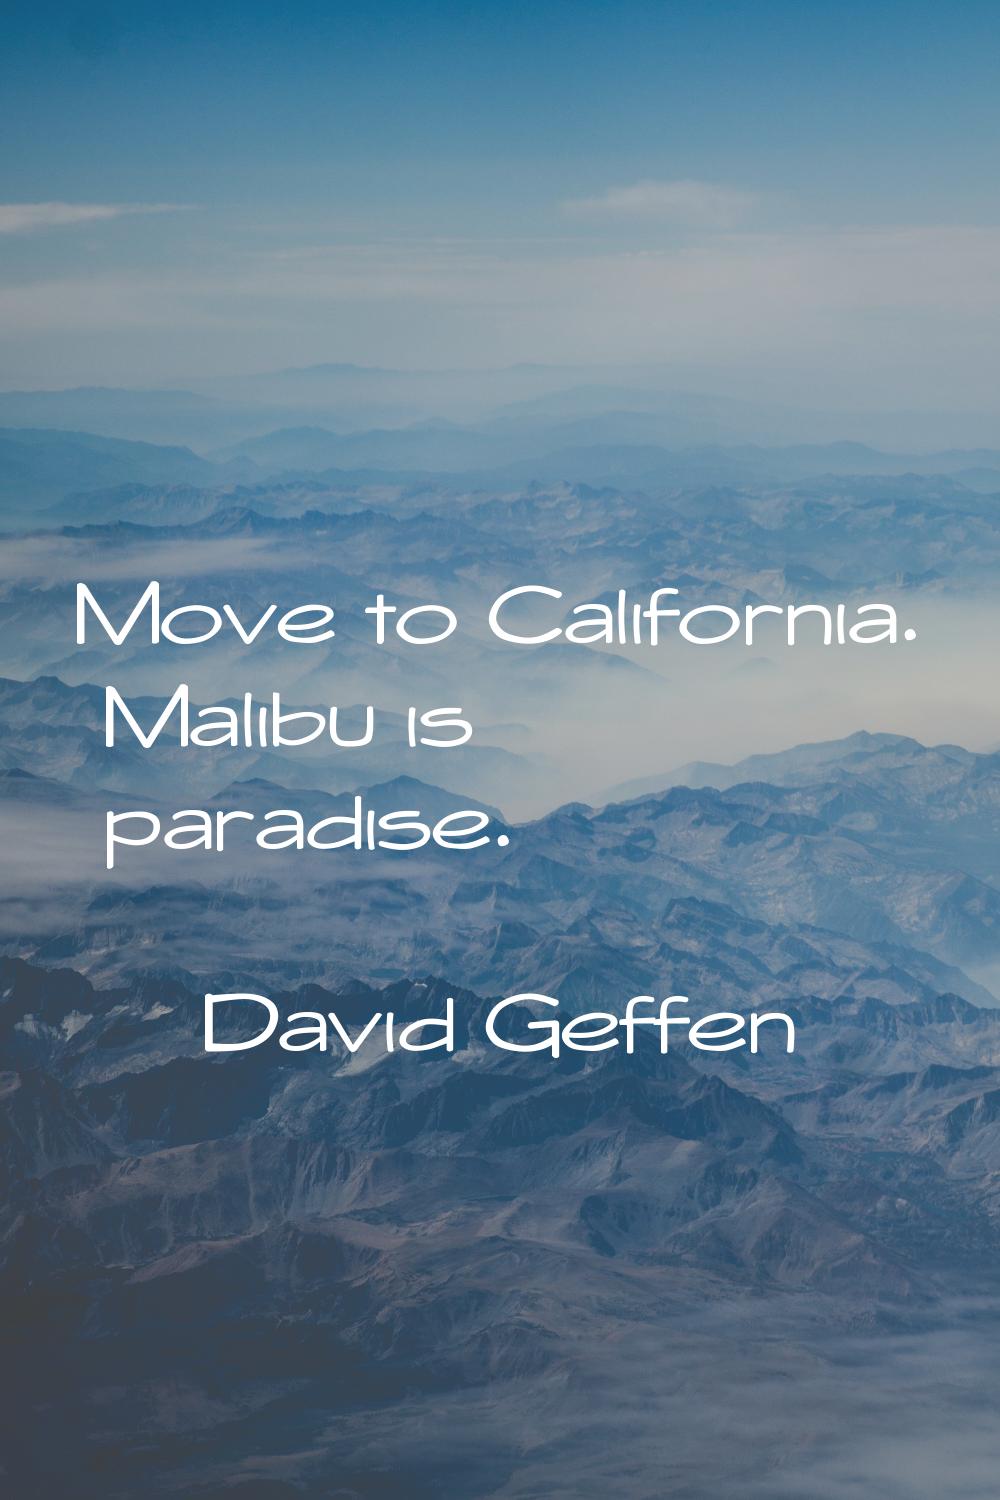 Move to California. Malibu is paradise.